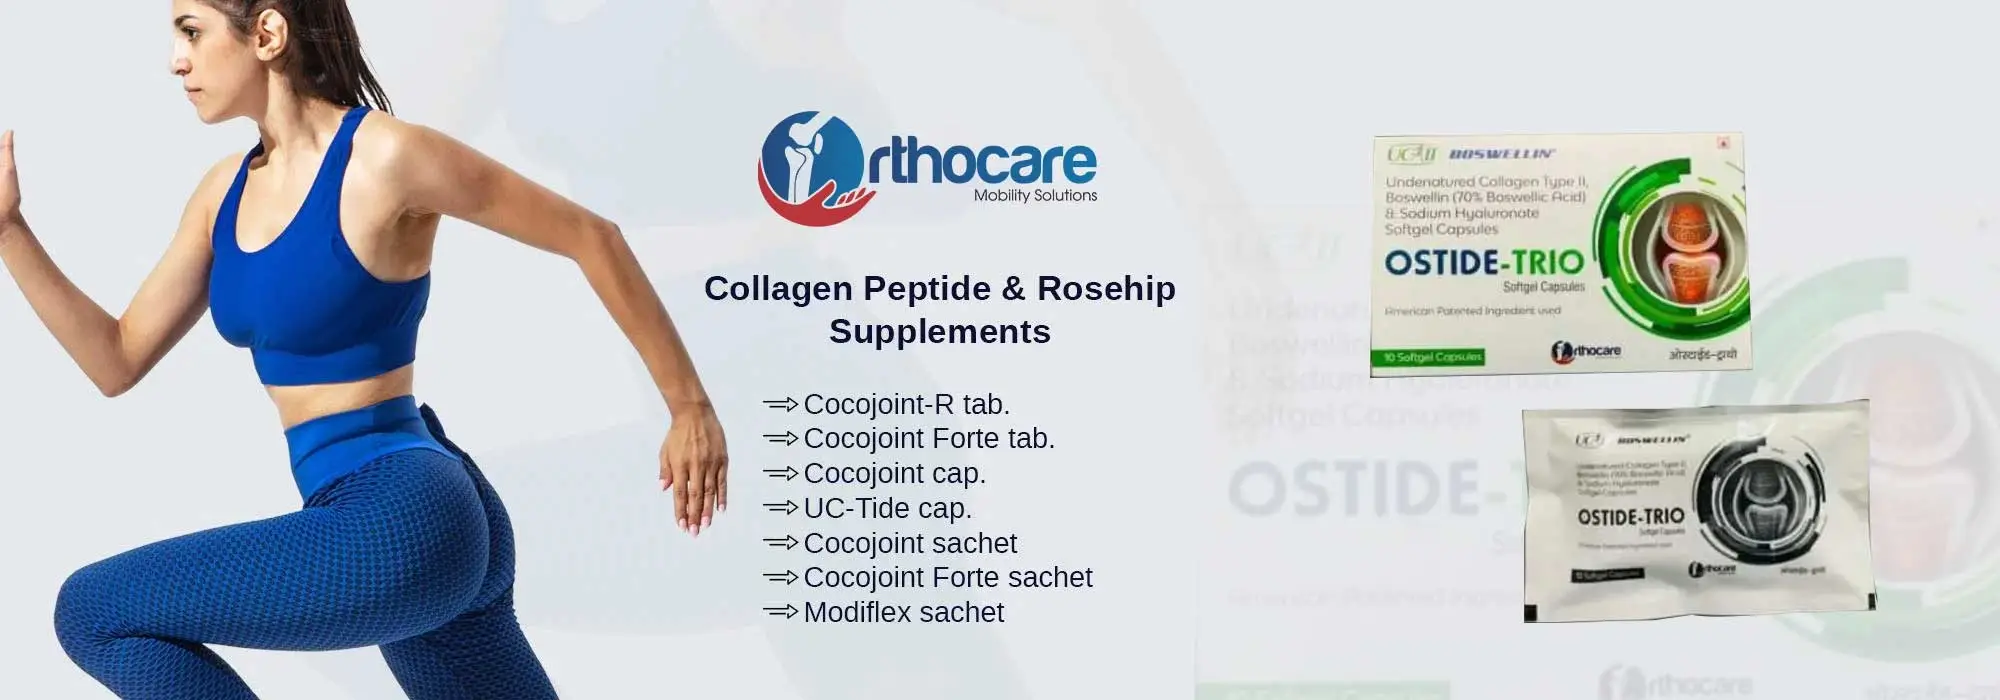 Collagen Peptide & Rosehip Supplements Suppliers in Churachandpur